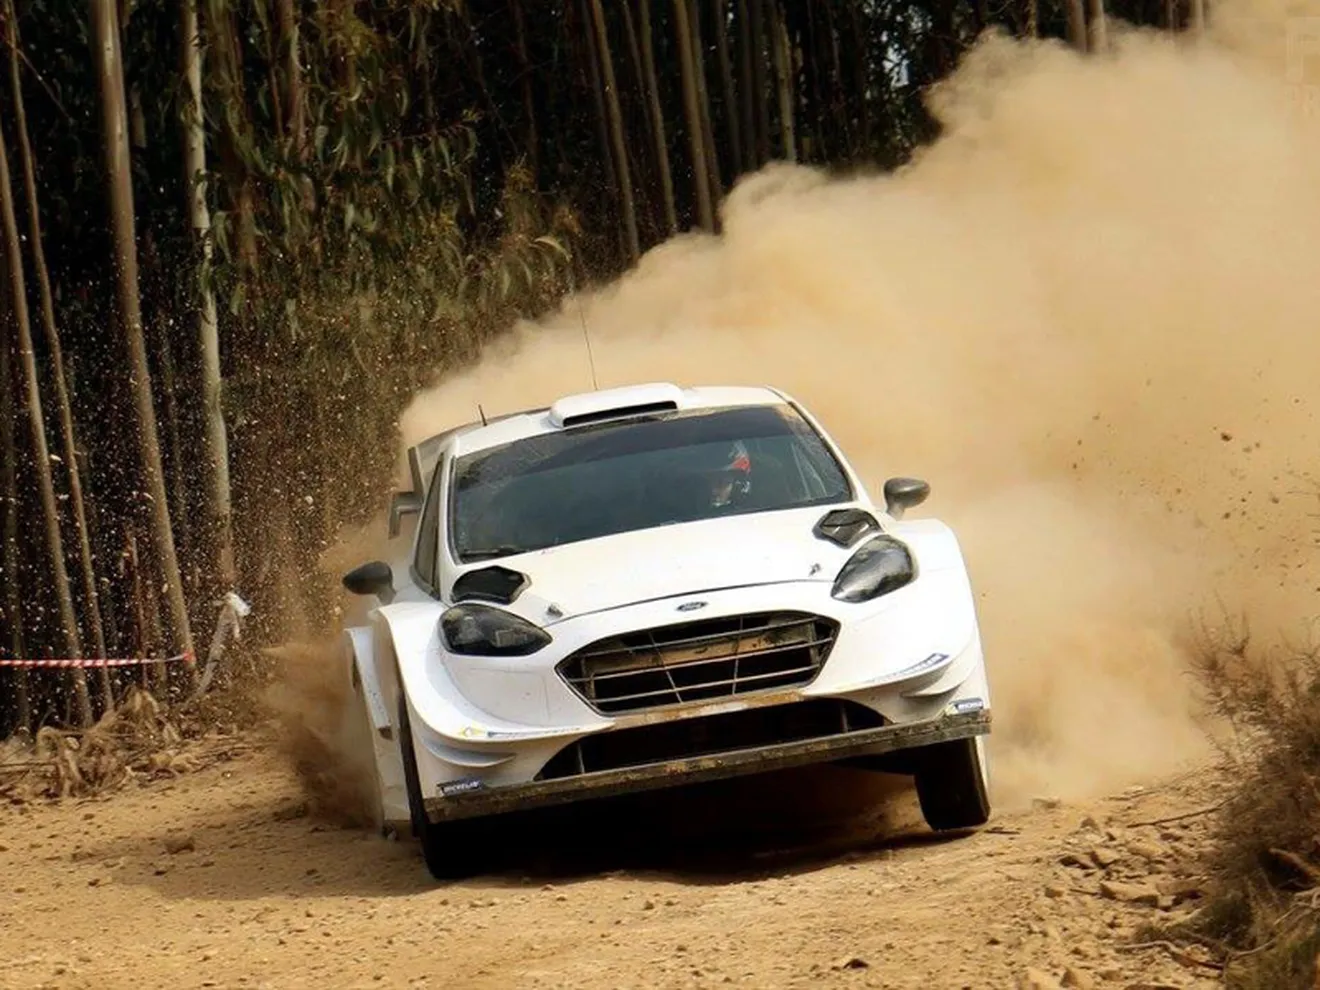 Test del WRC en Portugal: ¿Solución o problema?